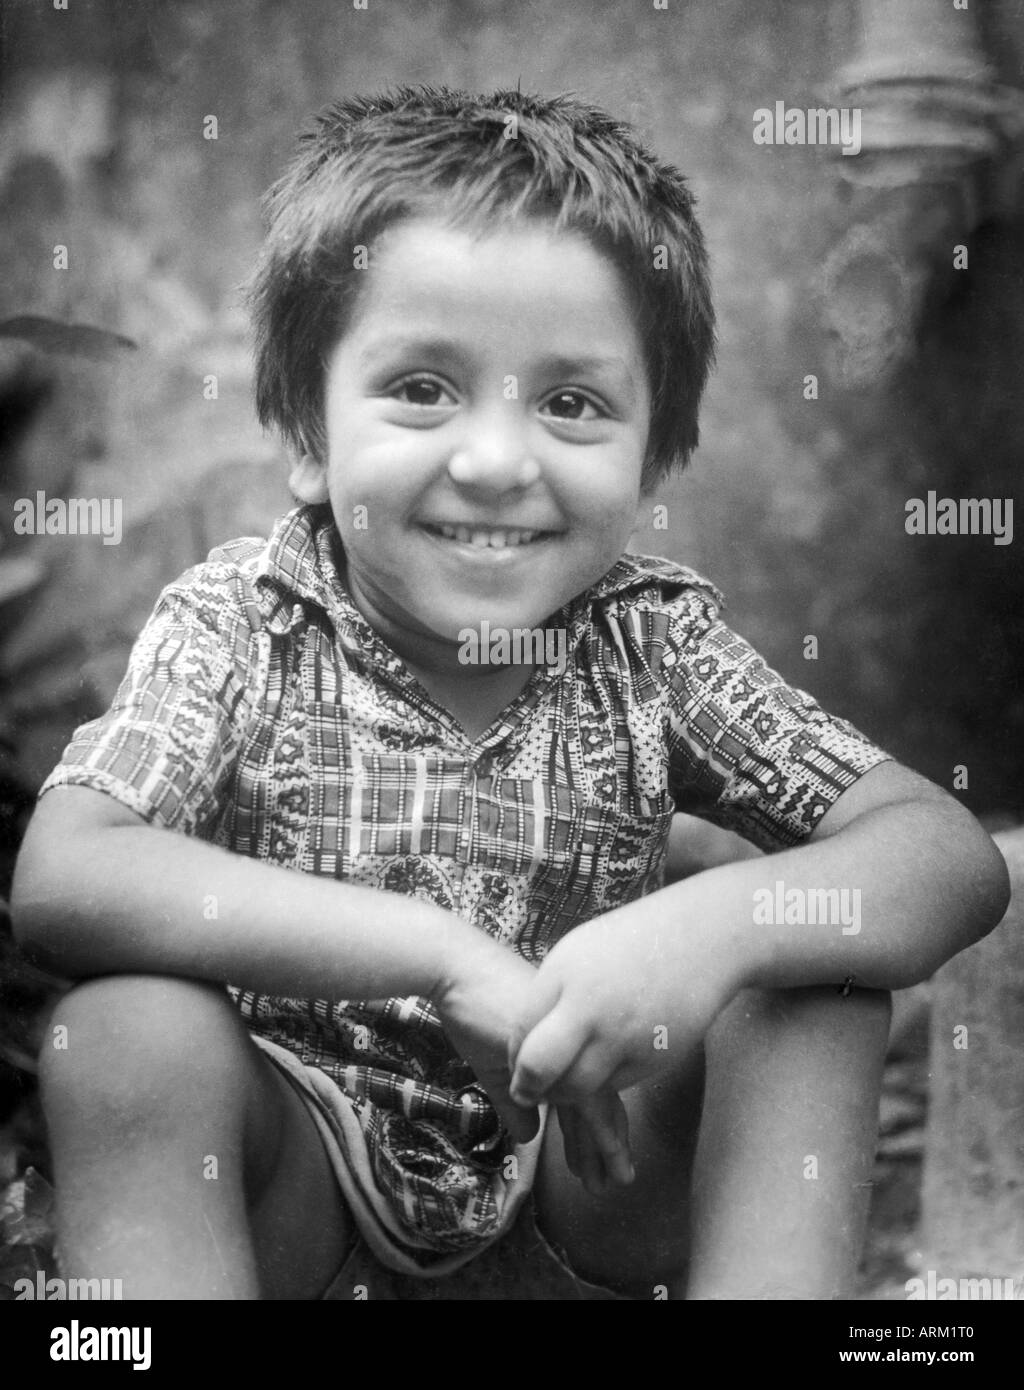 Portrait d'un garçon indien souriant Inde 1940s Old vintage 1900s image Banque D'Images